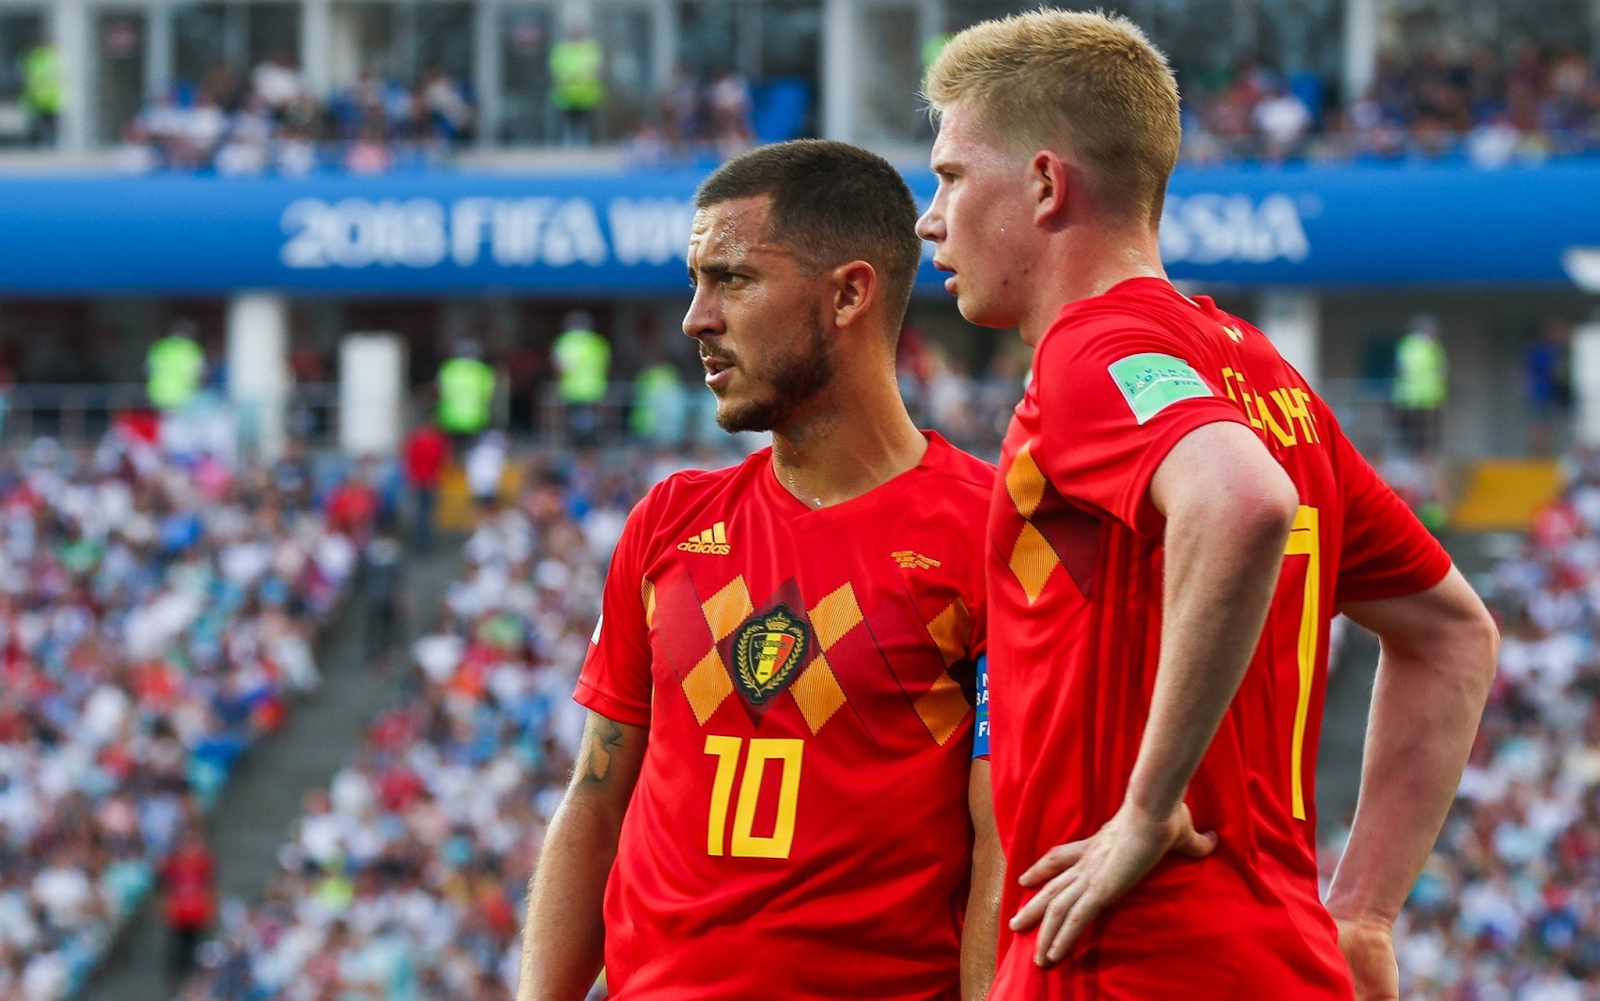 Eden Hazard could replace Kevin De Bruyne in Belgium’s starting XI